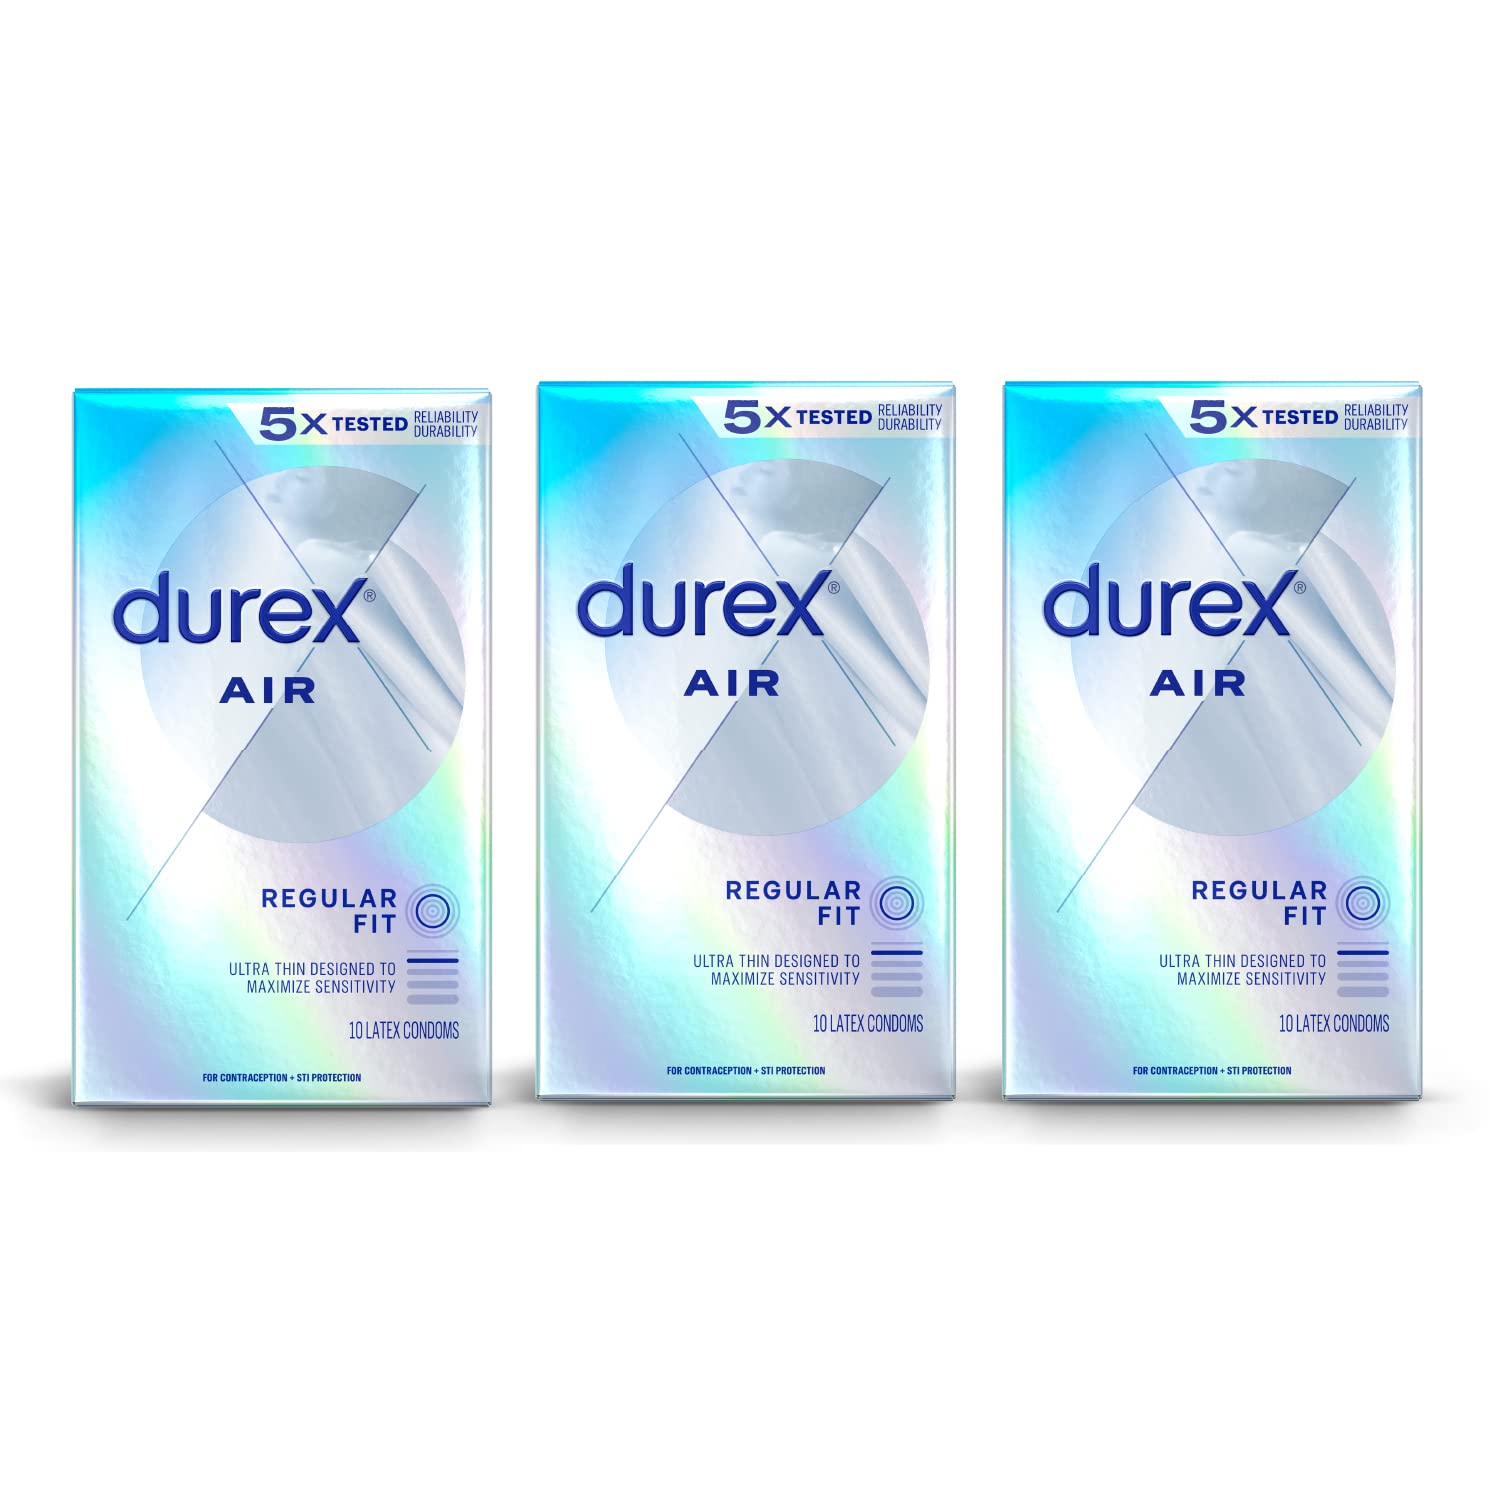 Durex Extra Thin, Transparent Natural Rubber Latex Condoms, Close